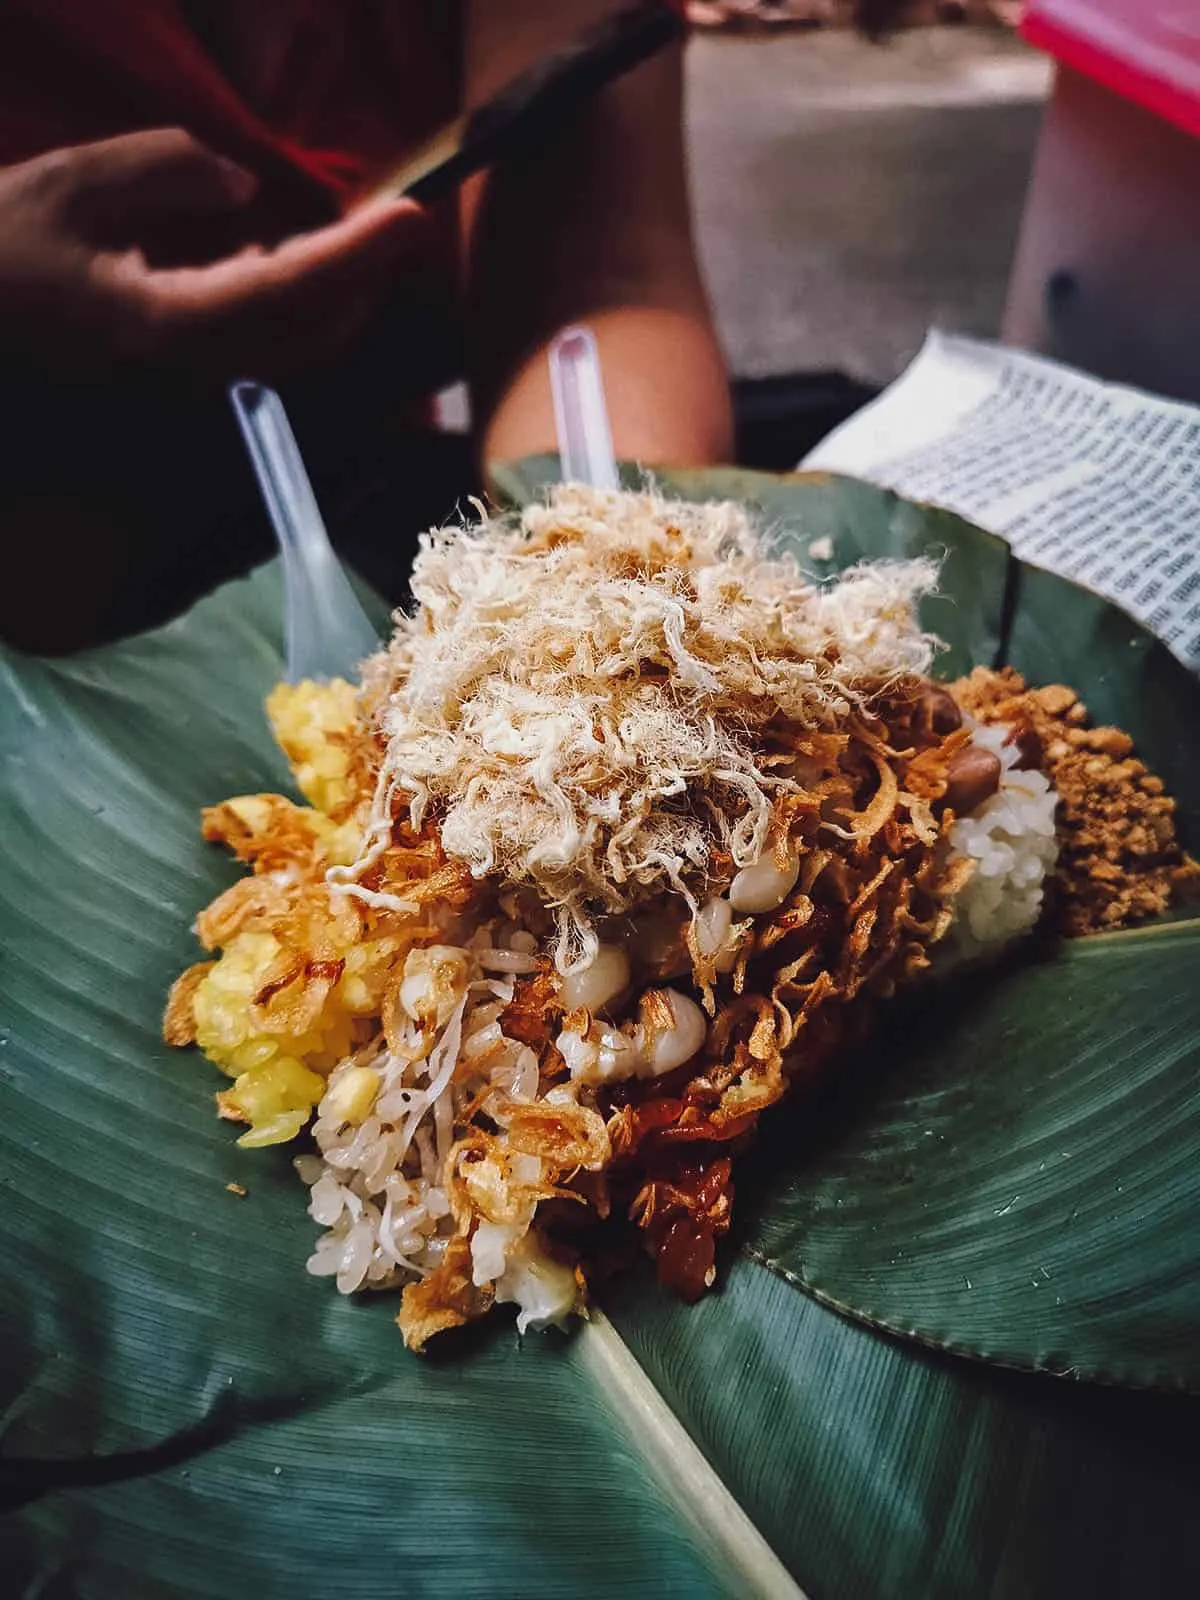 Xoi in Hanoi, a tasty Vietnamese street food dish of sticky rice